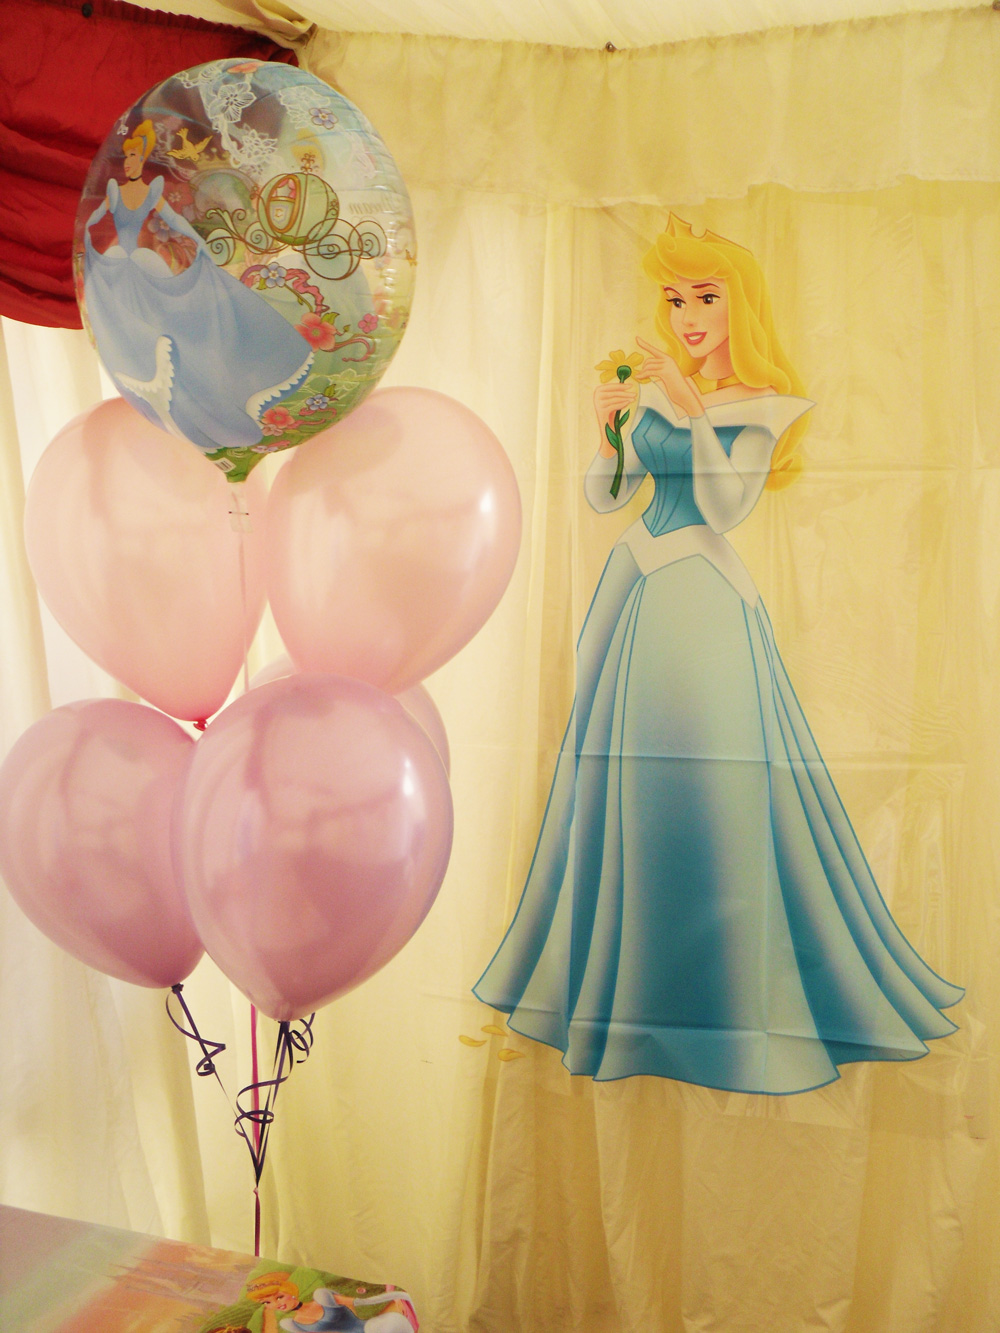 Princess party balloons London 2